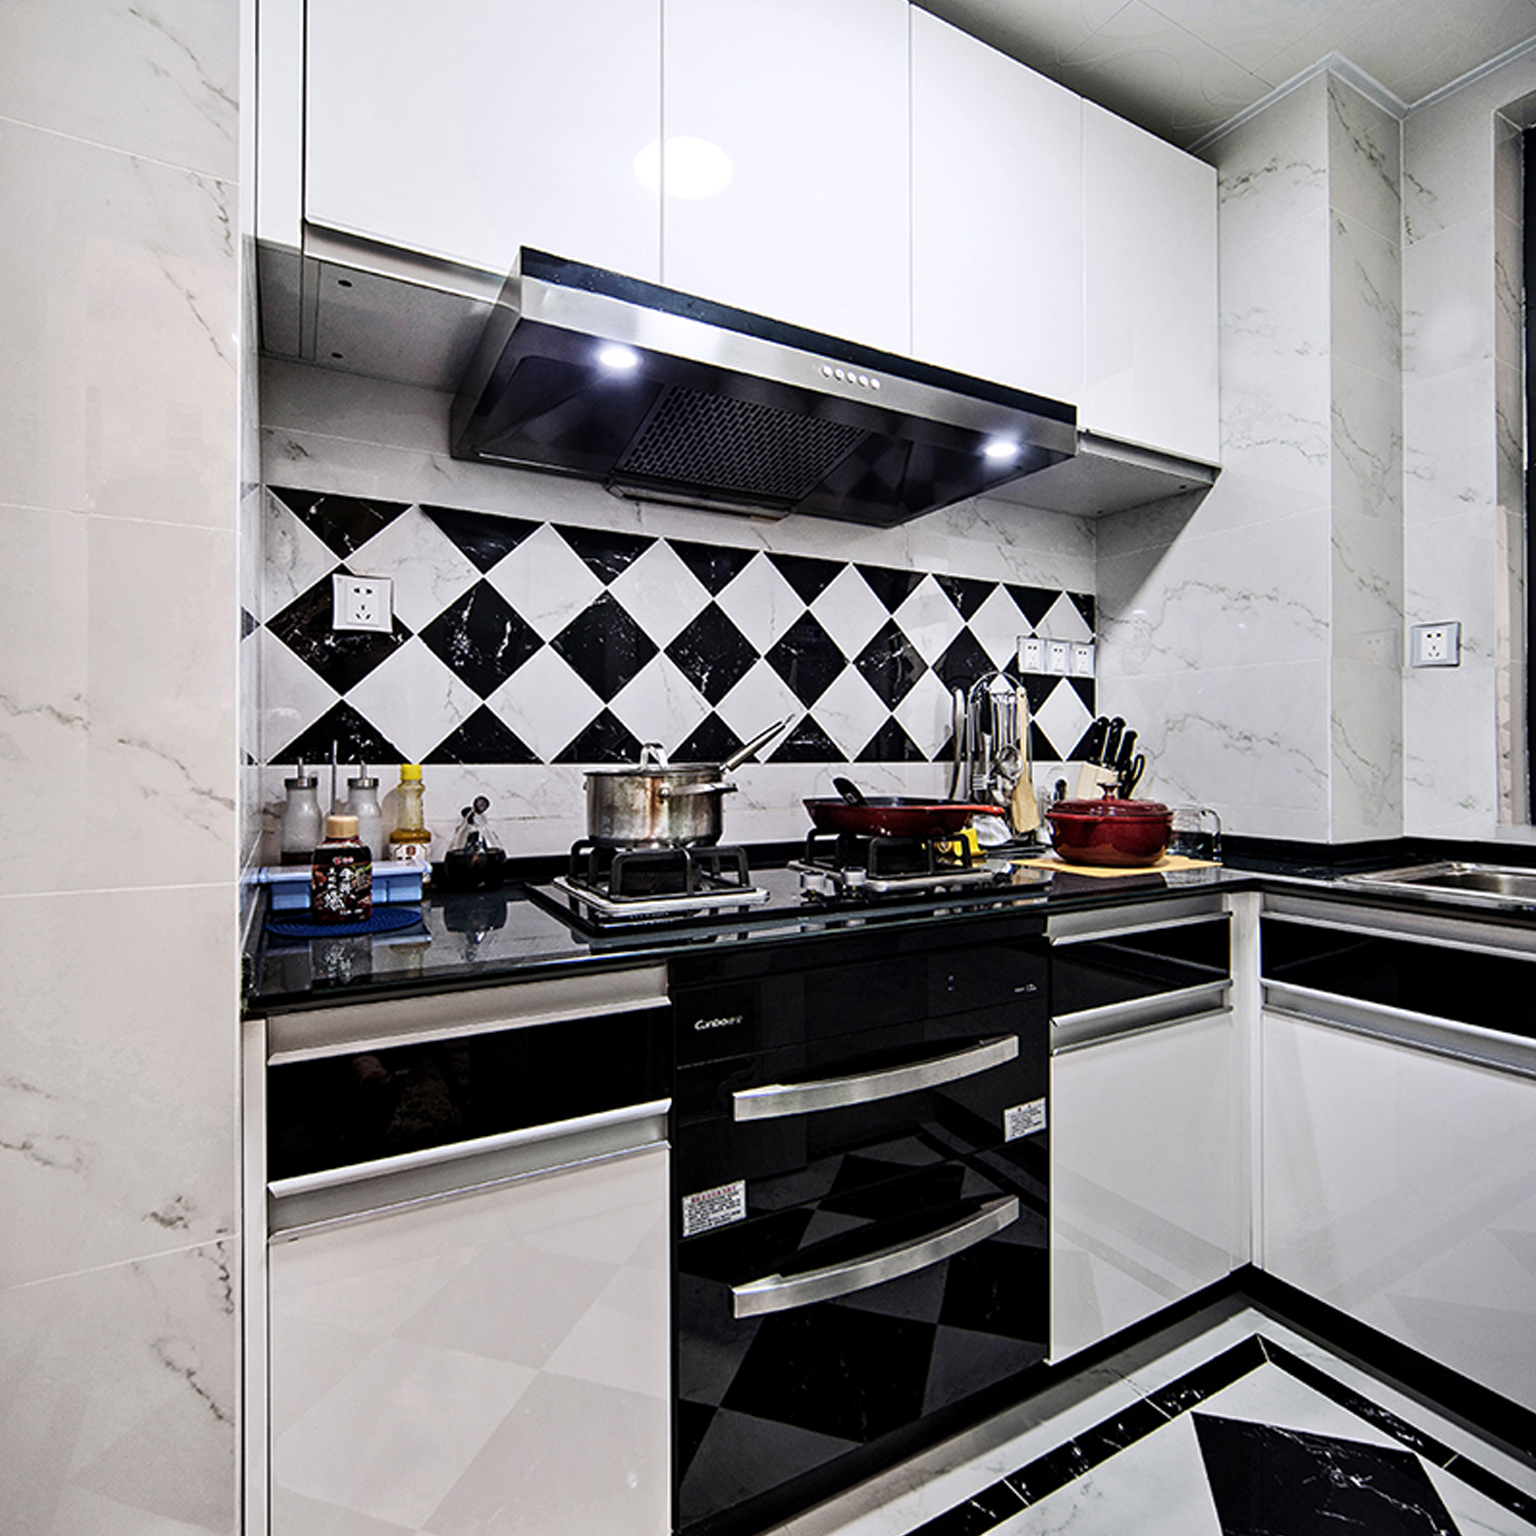 厨房用的是简单的黑白基调，现代感十足又显得干净整洁。